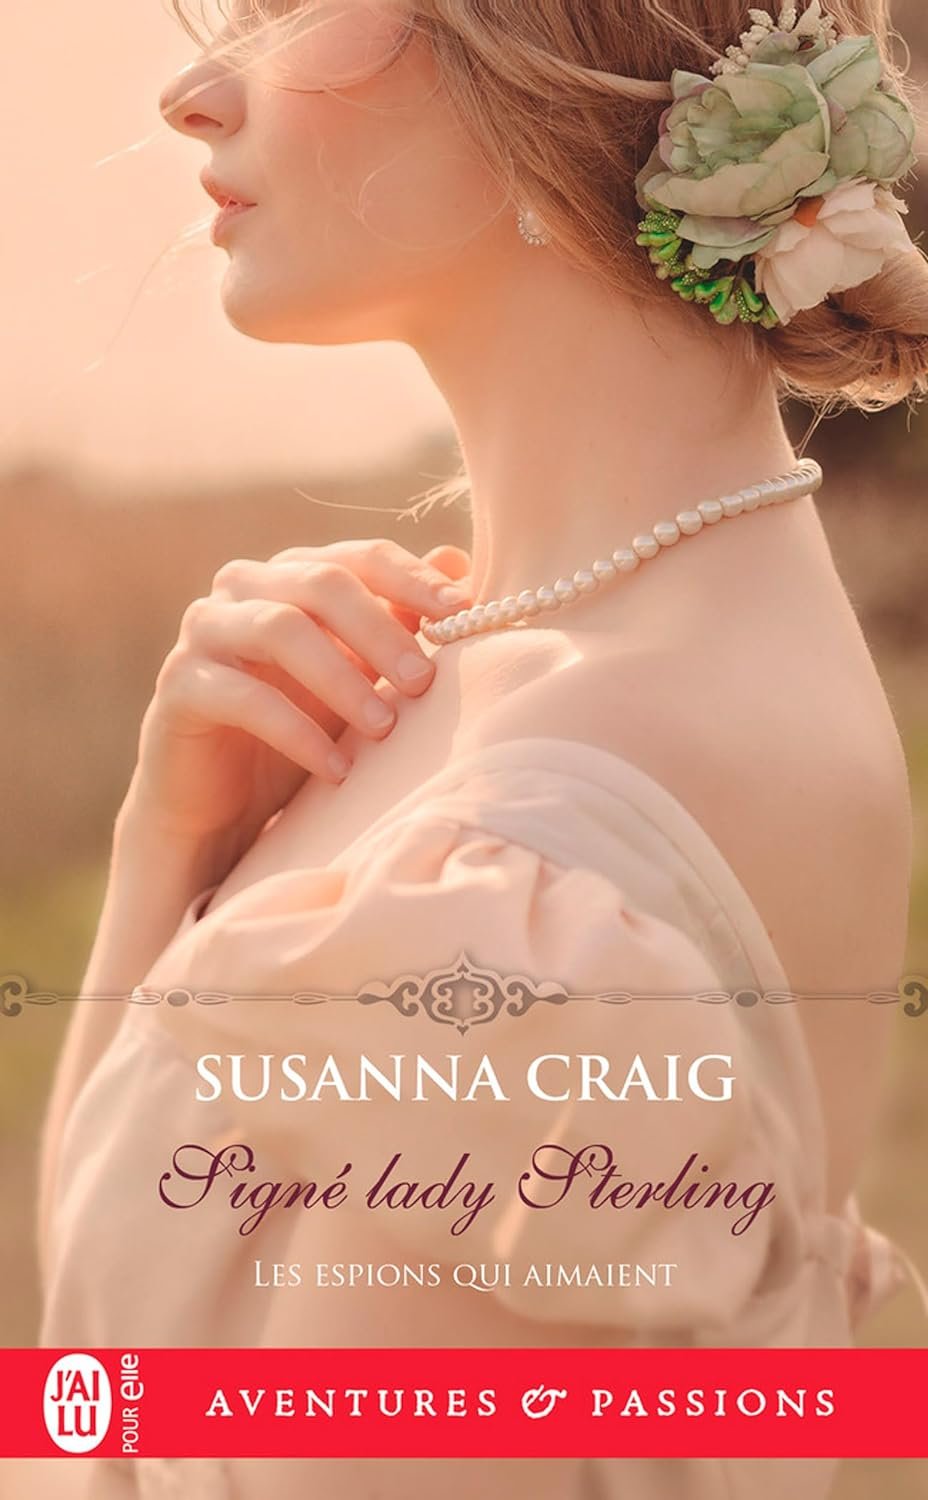 Susanna Craig - Les espions qui aimaient ,Tome 3 - Signé lady Sterling